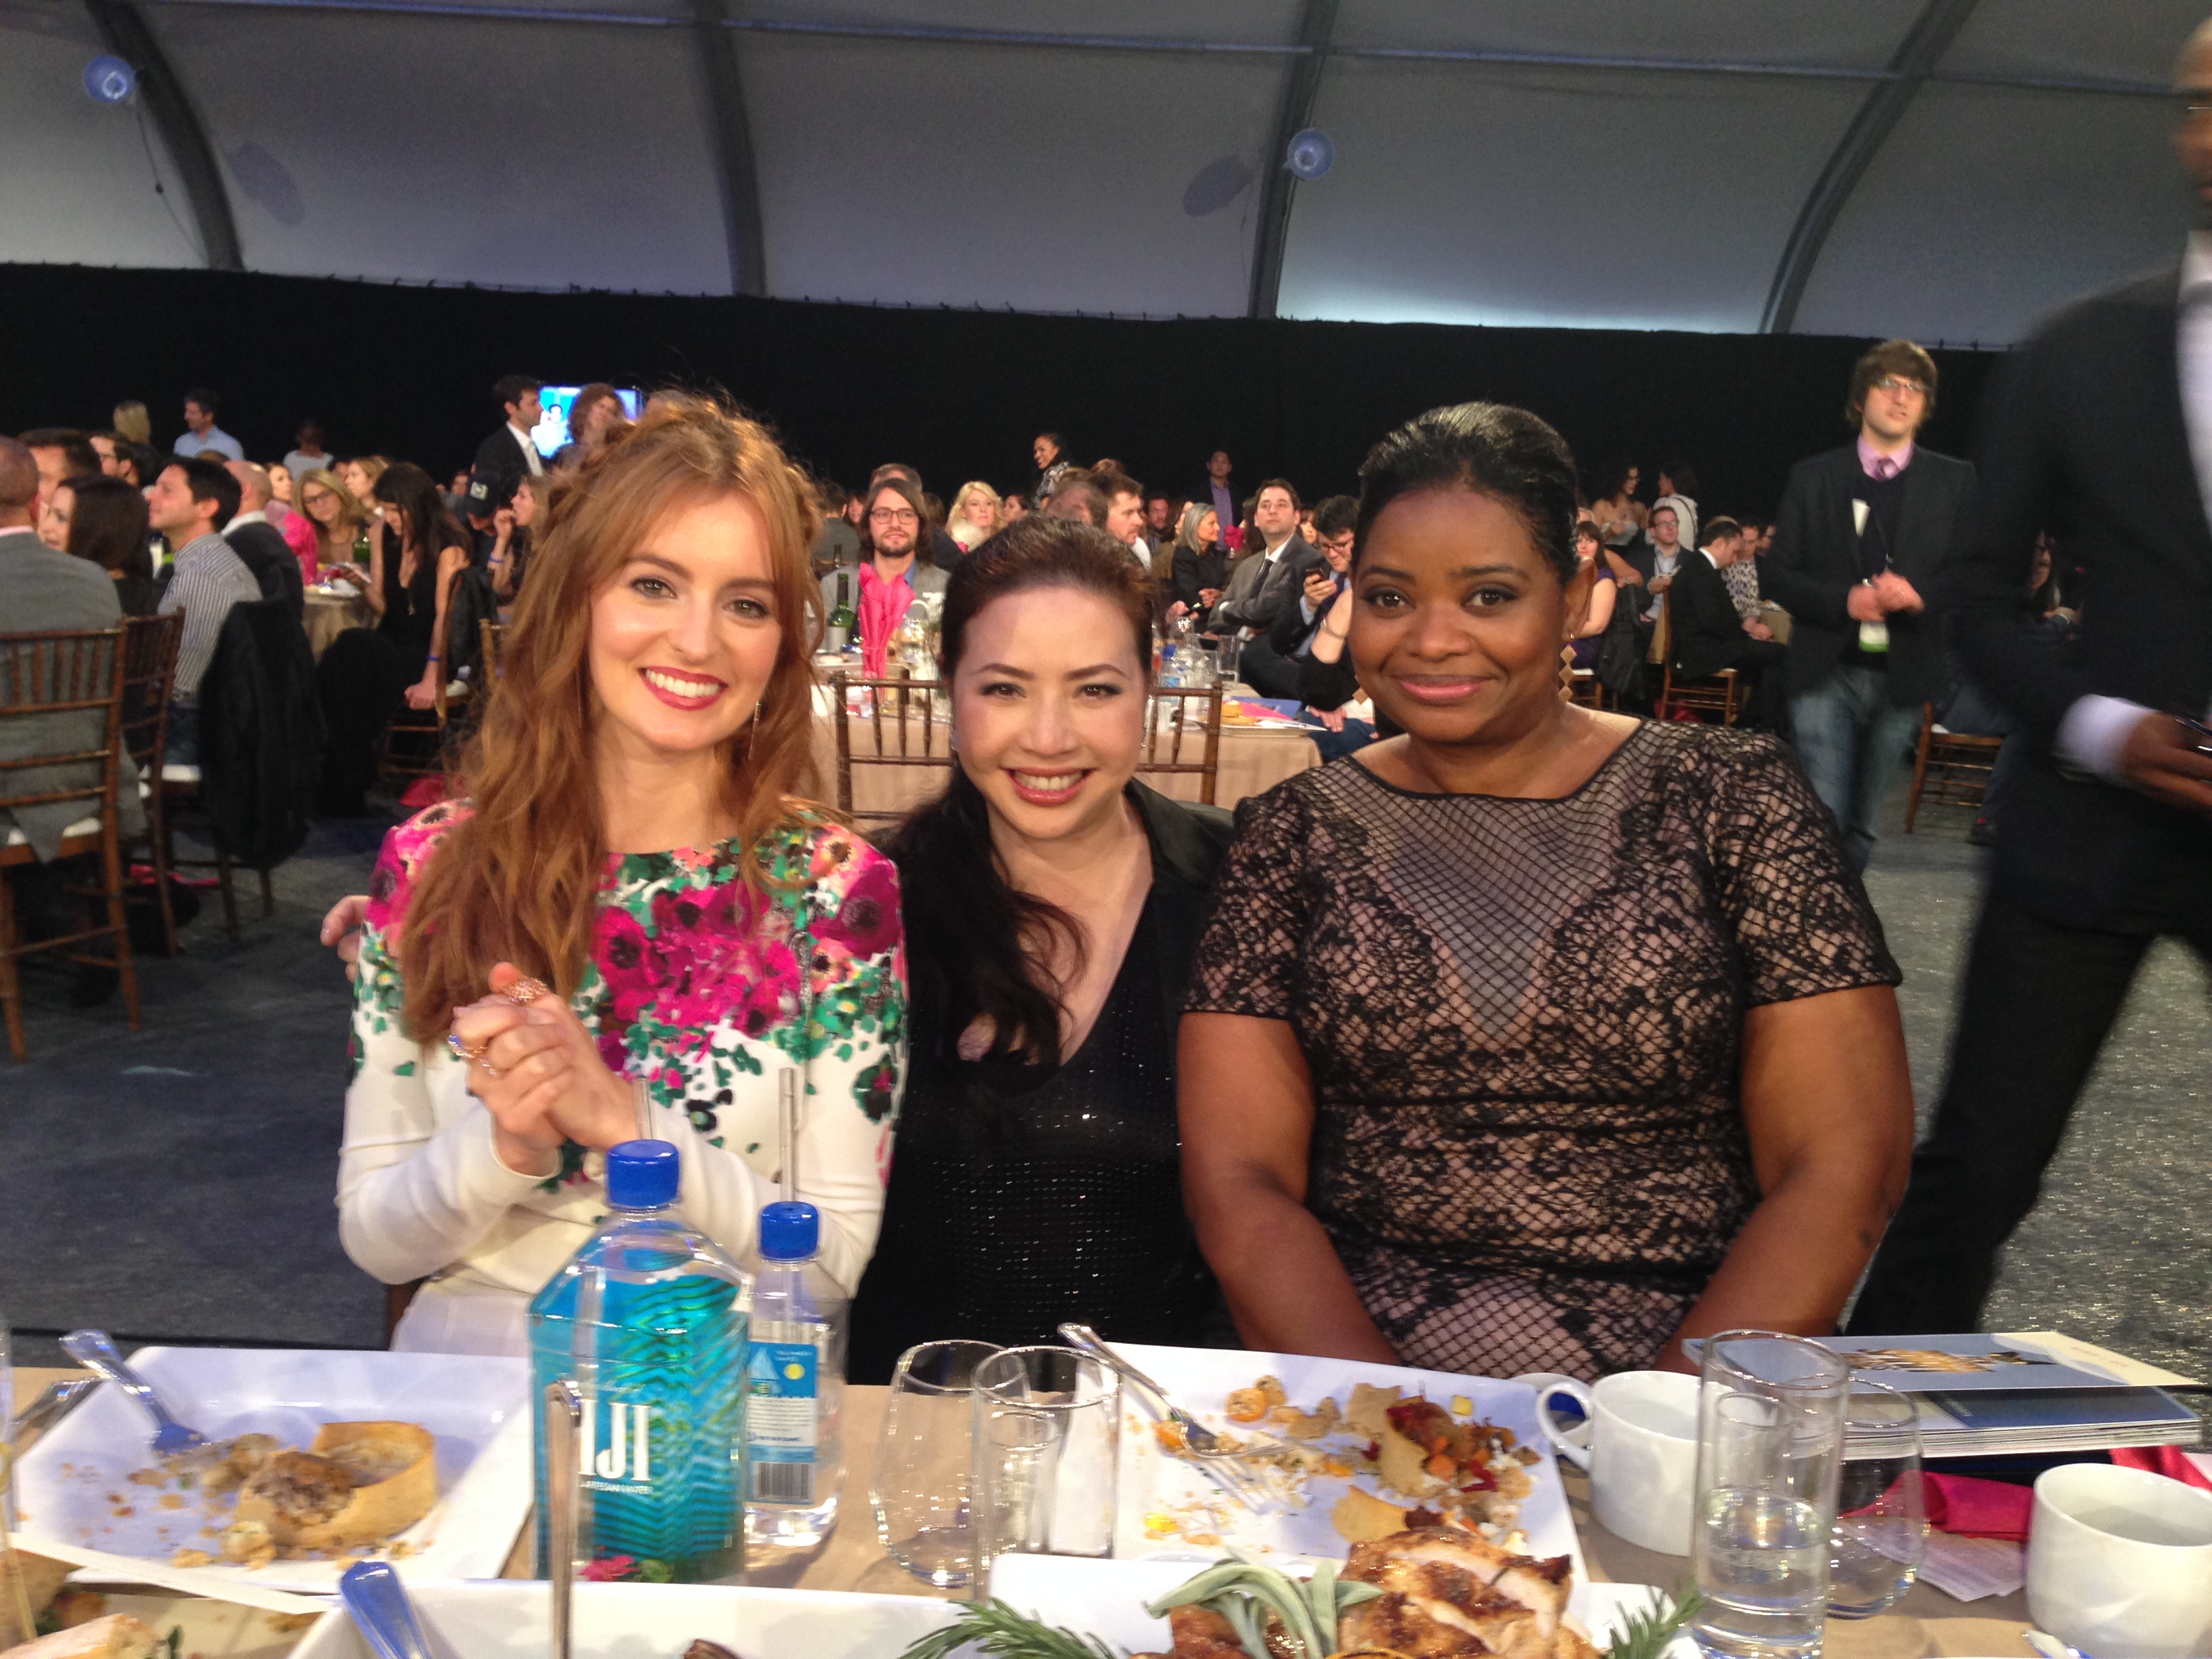 Spirit Awards 2014 with Ahna O'Reilly and Octavia Spencer